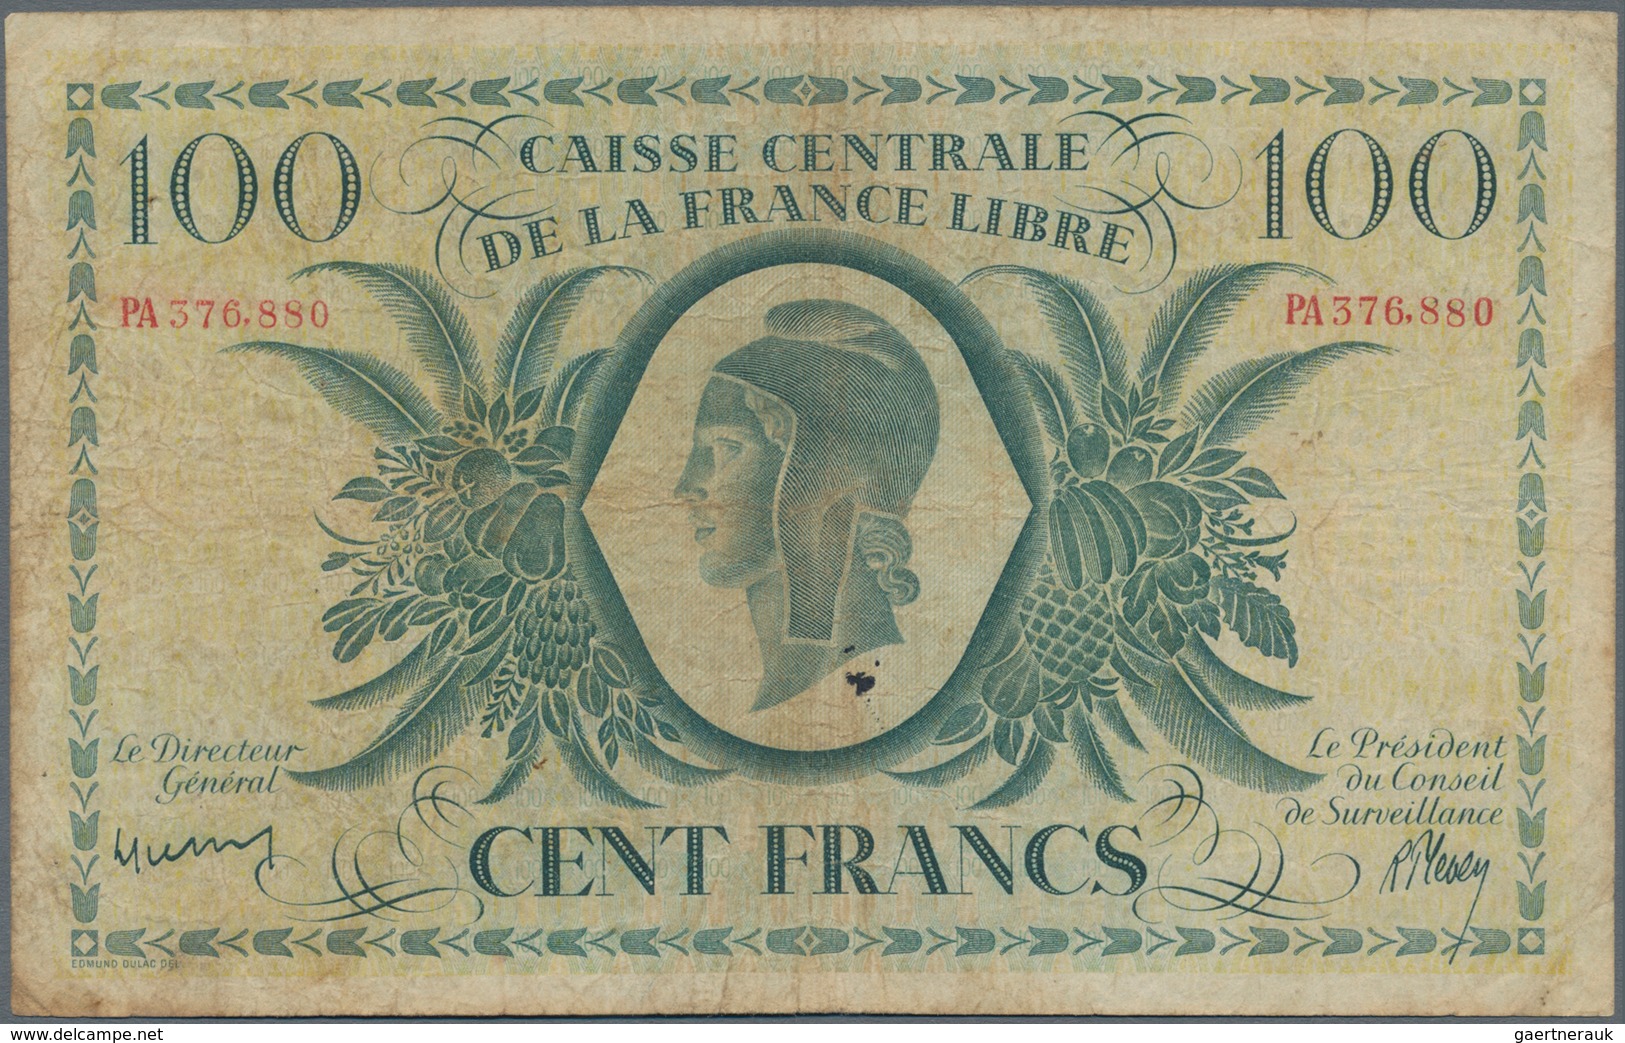 Réunion: Caisse Centrale De La France Libre 100 Francs 1941 With Serial Number PA376.880, P.37a, Lig - Reunion